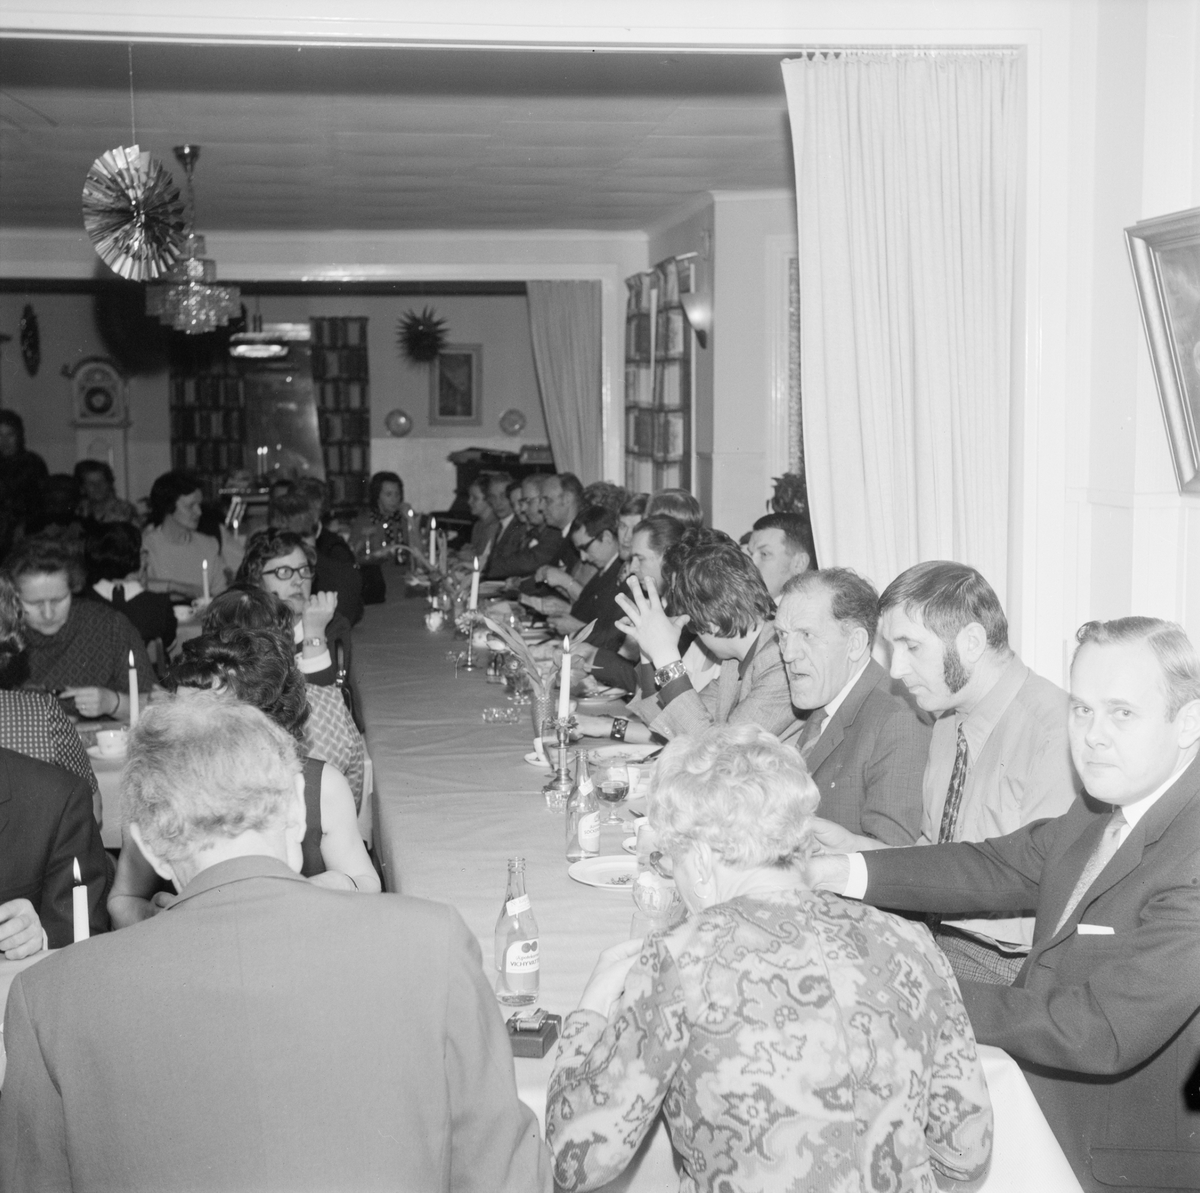 Partifolk aktiverar studier, Örbyhus, Uppland, februari 1972